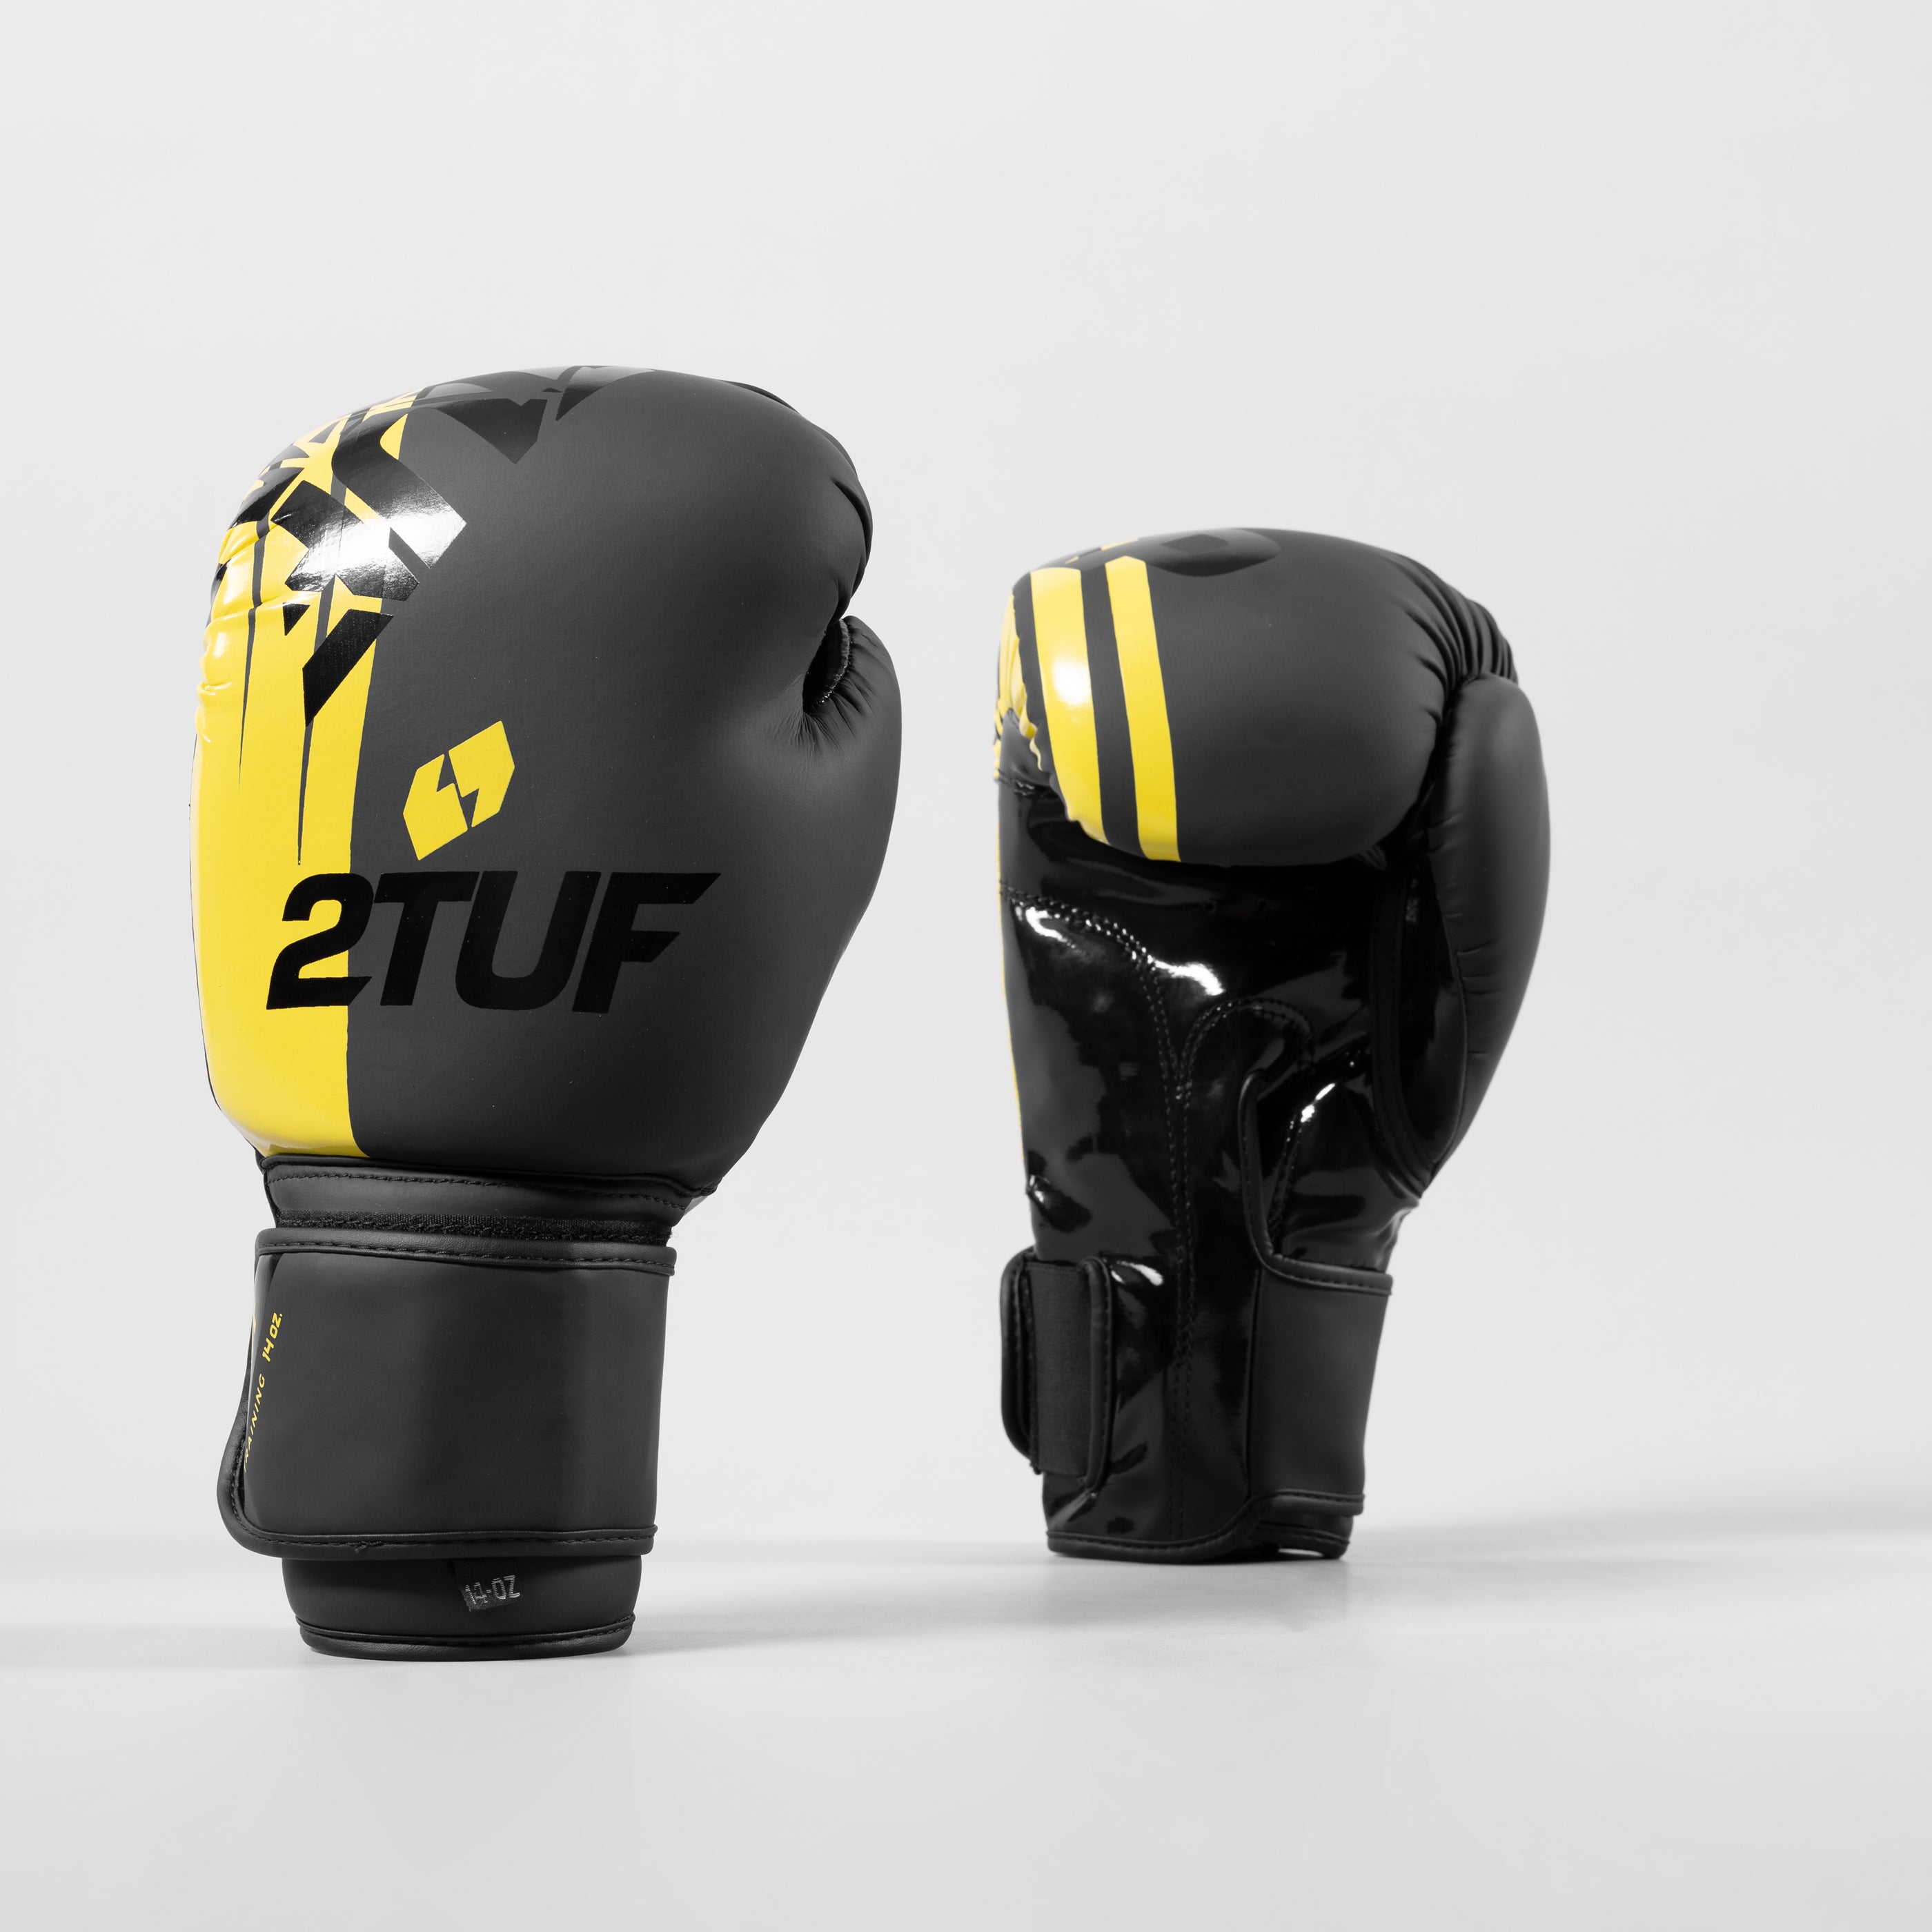 'Tuff' Boxing Gloves - Black/Yellow 2TUF2TAP